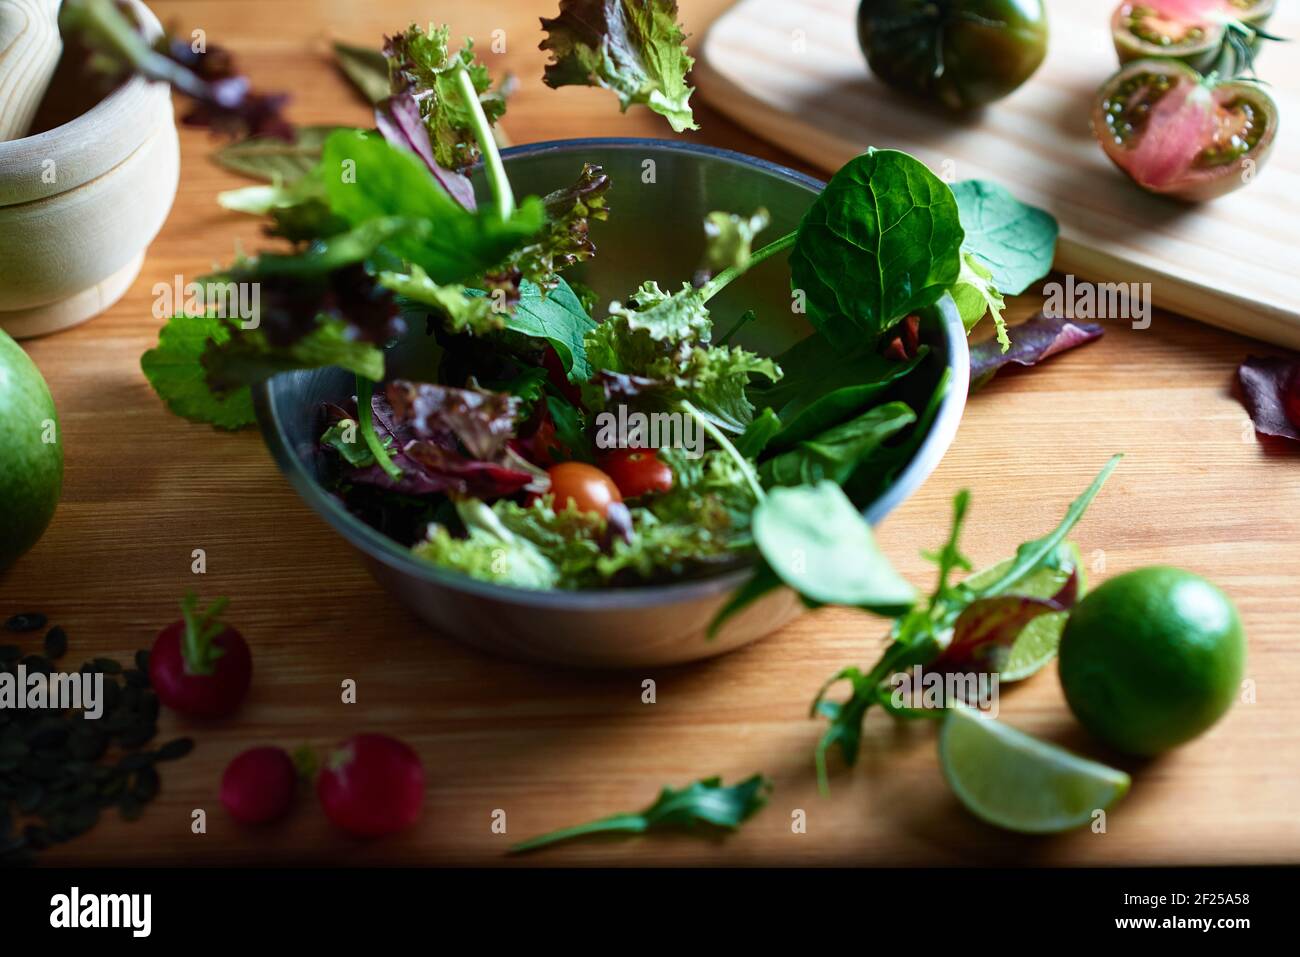 Laitue tombant sur une salade dans un bol en métal sur une table en bois dans une cuisine. Dans la photographie gastronomique, vous pouvez voir des radis, des graines, des planches à découper Banque D'Images